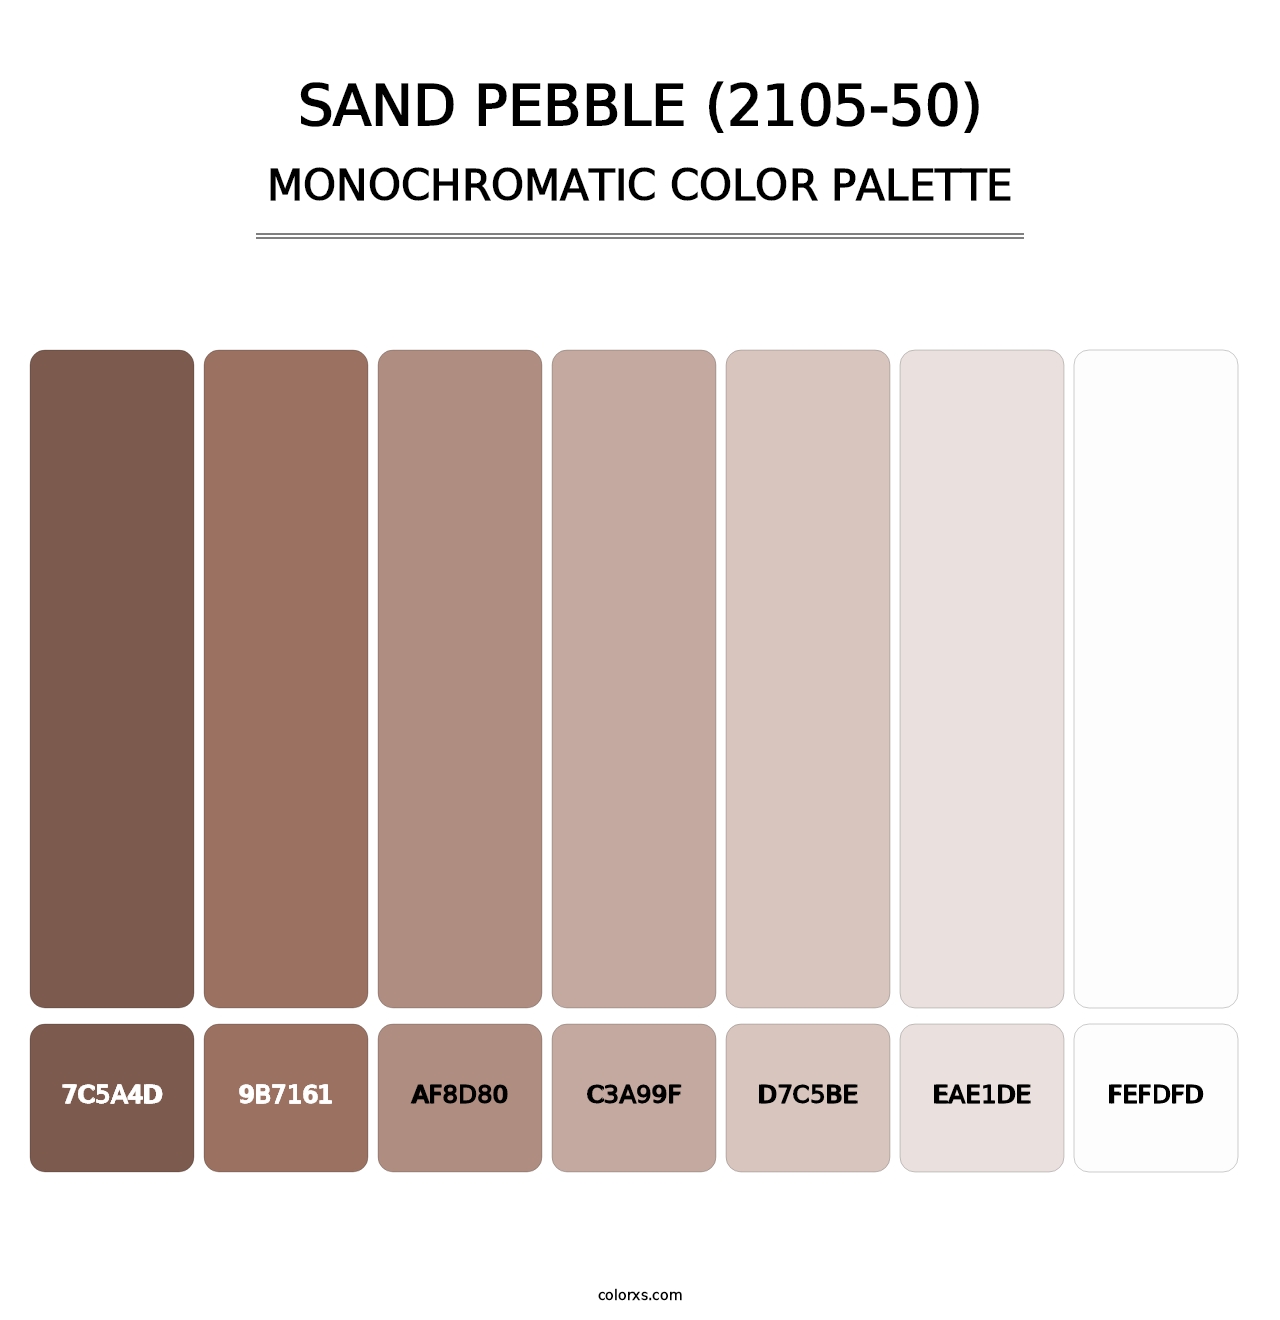 Sand Pebble (2105-50) - Monochromatic Color Palette